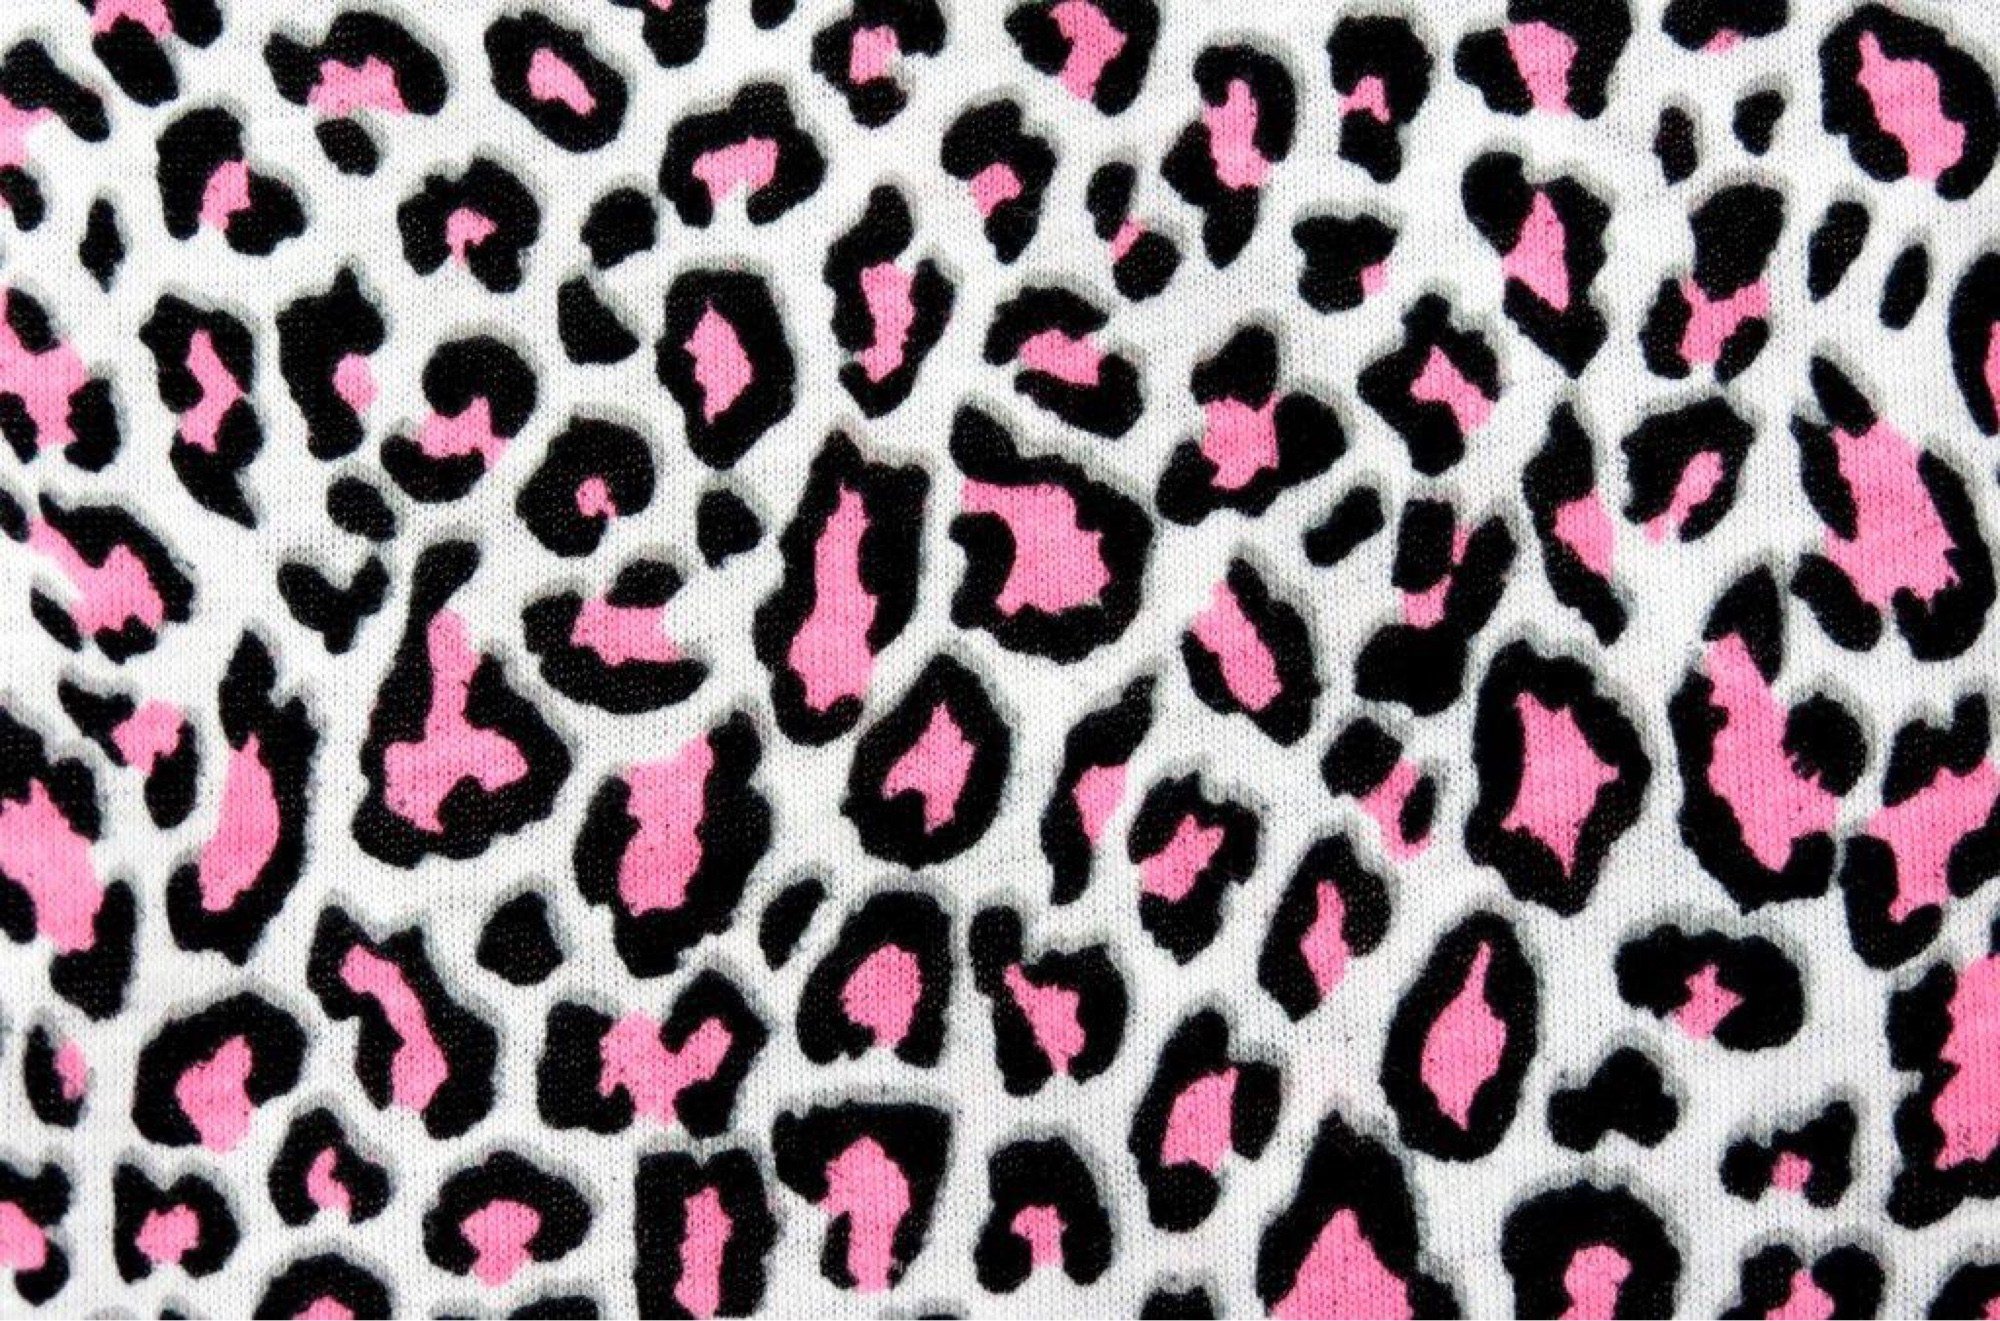 Animal pattern. Леопард паттерн. Розовый леопард паттерн. Леопардовый принт. Леопардовый фон.